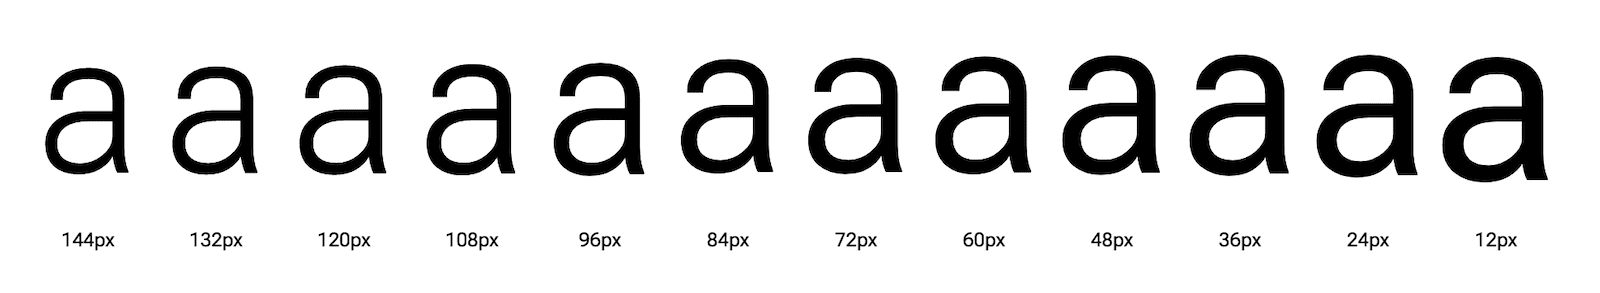 さまざまな光学サイズで表示された文字「a」